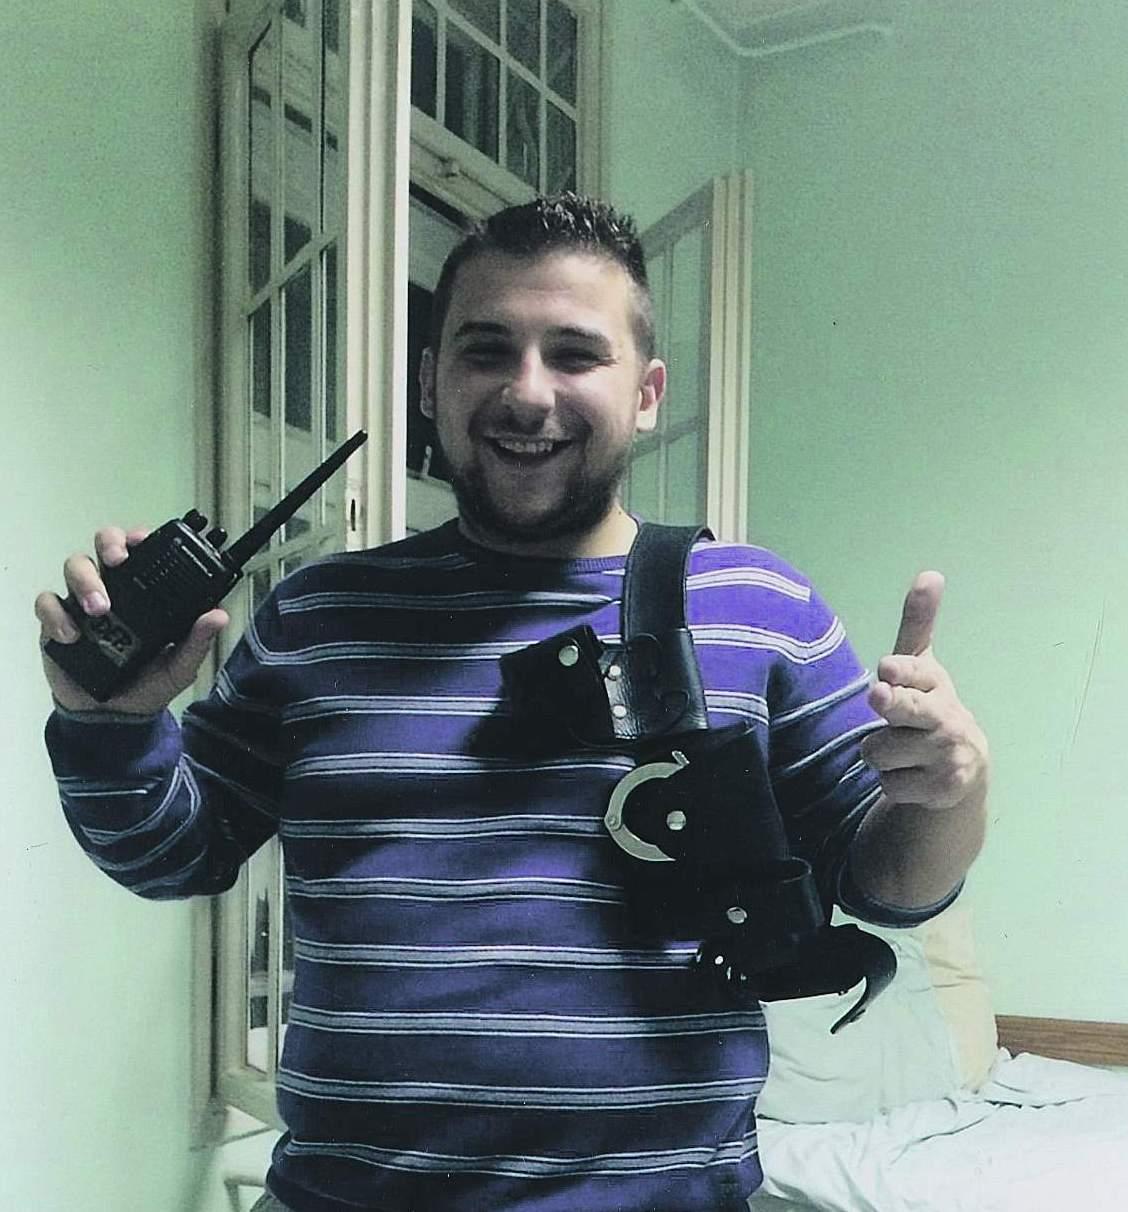 Porobić fotografiran u tuzlanskom zatvoru 2016. godine: Trenutno na liječenju u Jagomiru - Avaz